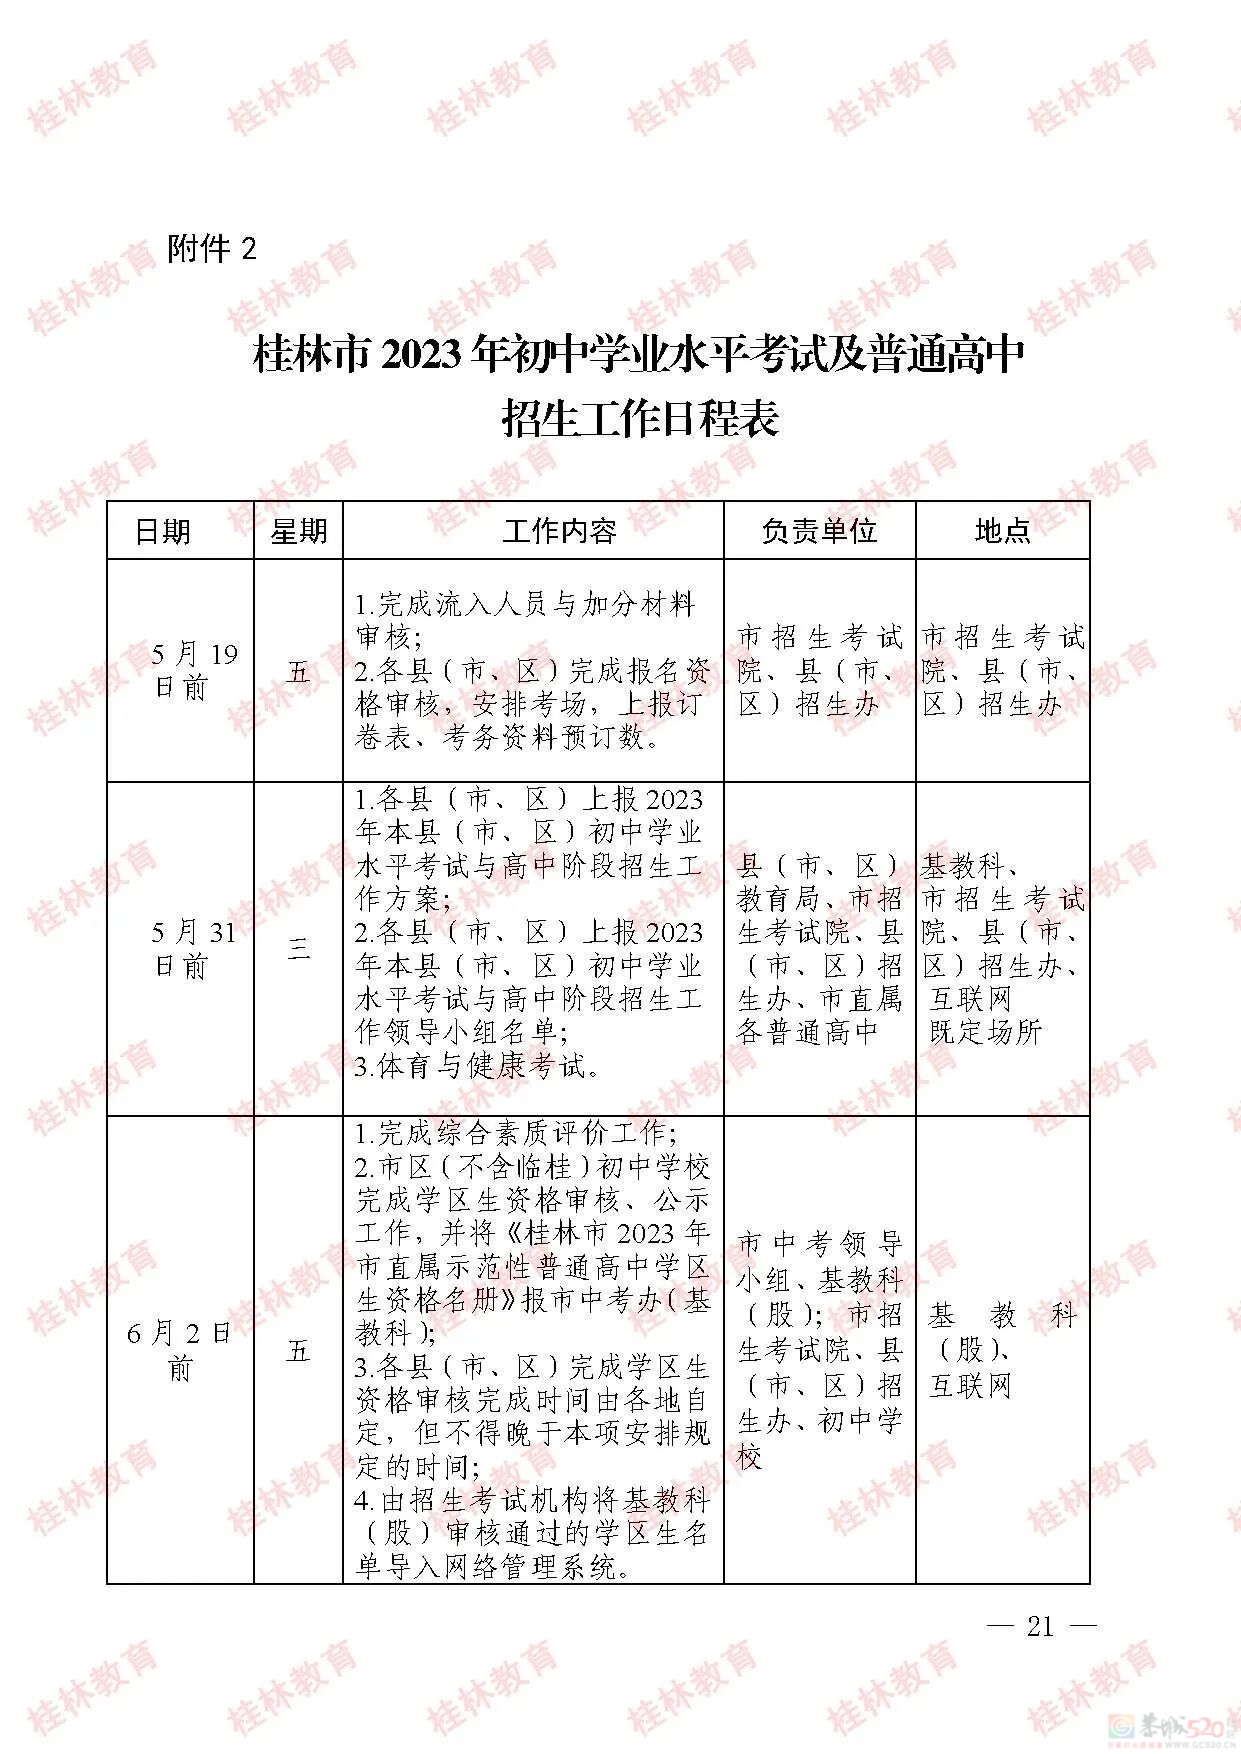 桂林市2023年初中学业考试与高中阶段学校招生工作方案发布279 / 作者:论坛小编01 / 帖子ID:307086